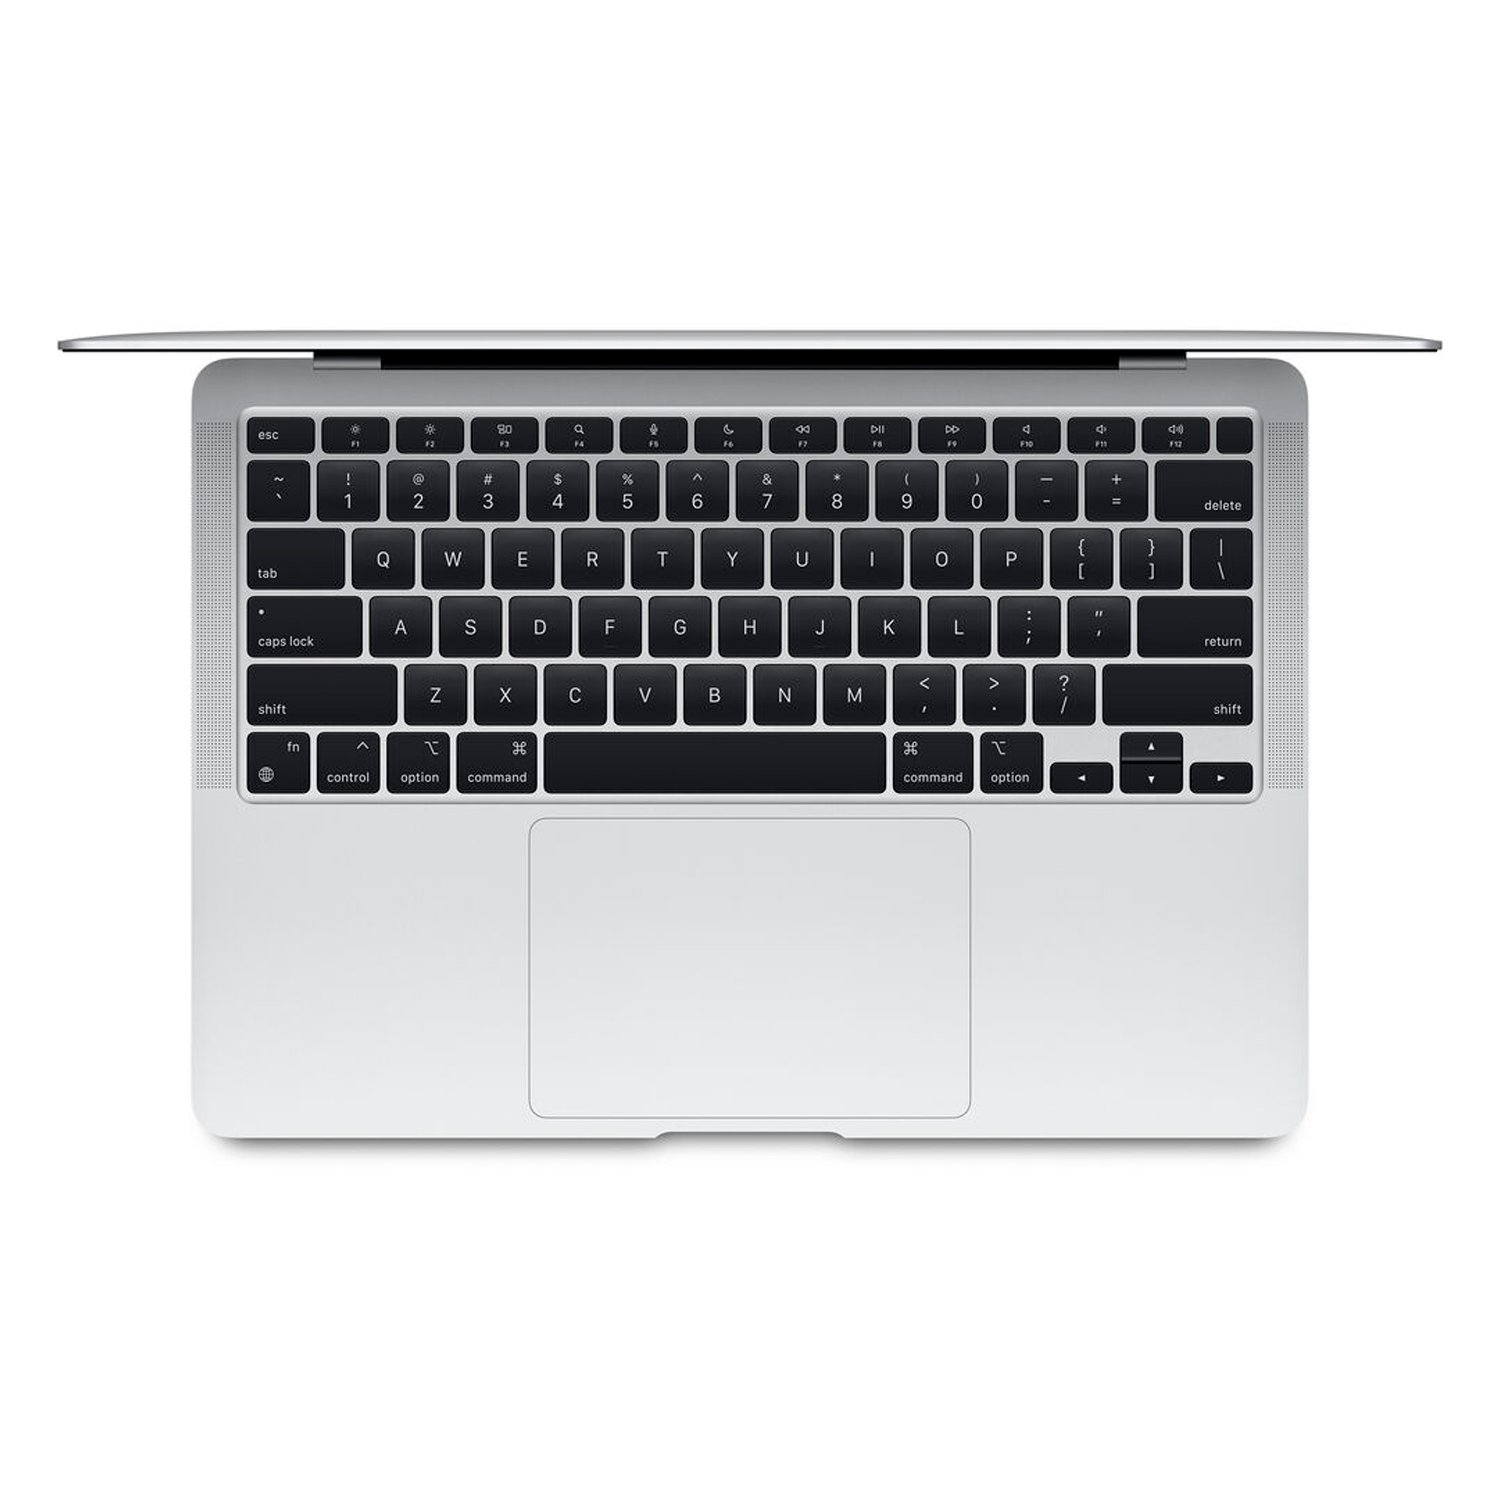 Apple Macbook Air *CPO* FGN93LL/A 13.3" Chip M1 256GB SSD / 8GB RAM - Prata